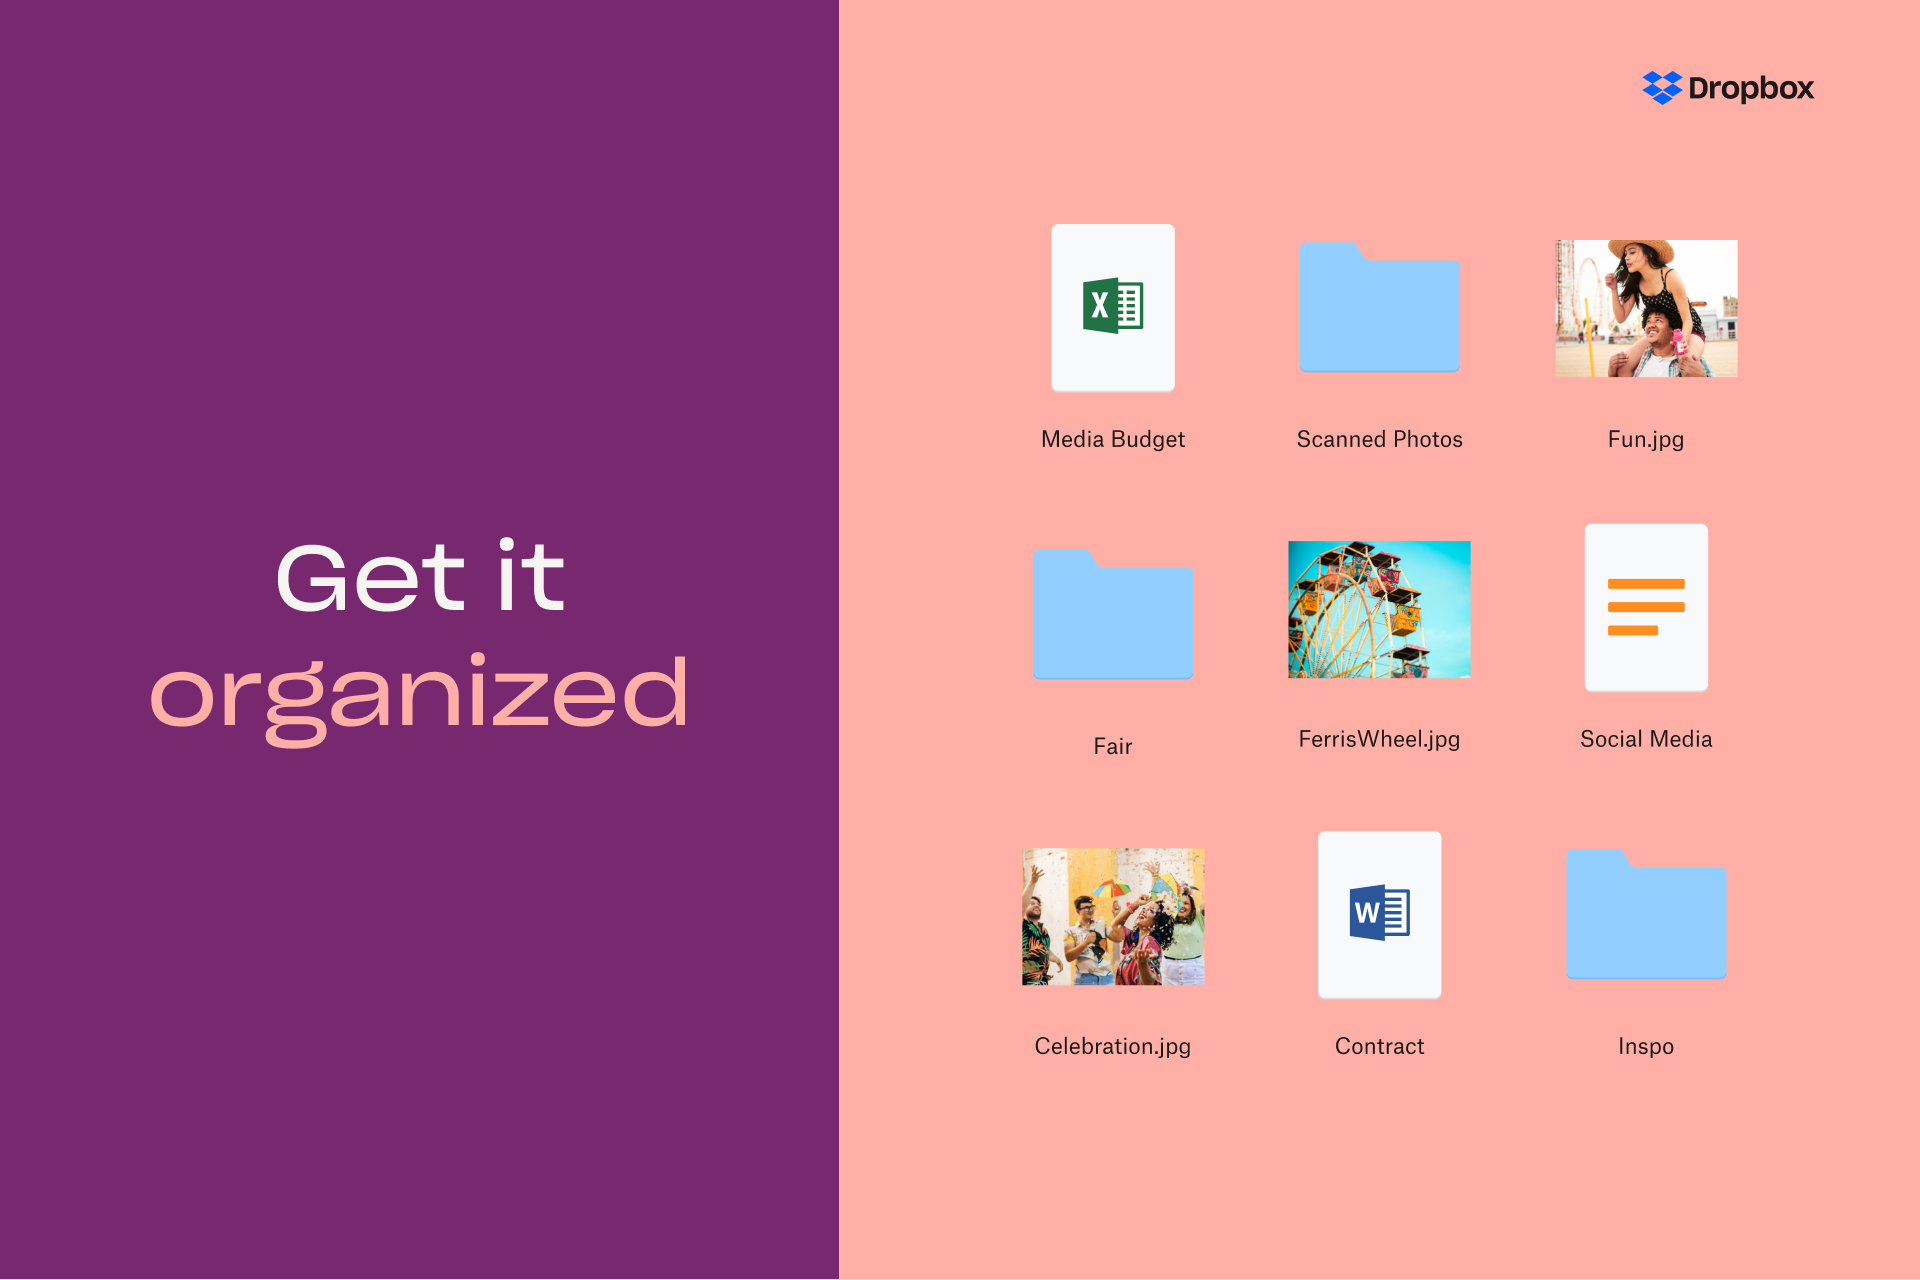 「Get it organized」字樣旁邊，彙整了不同類型的檔案